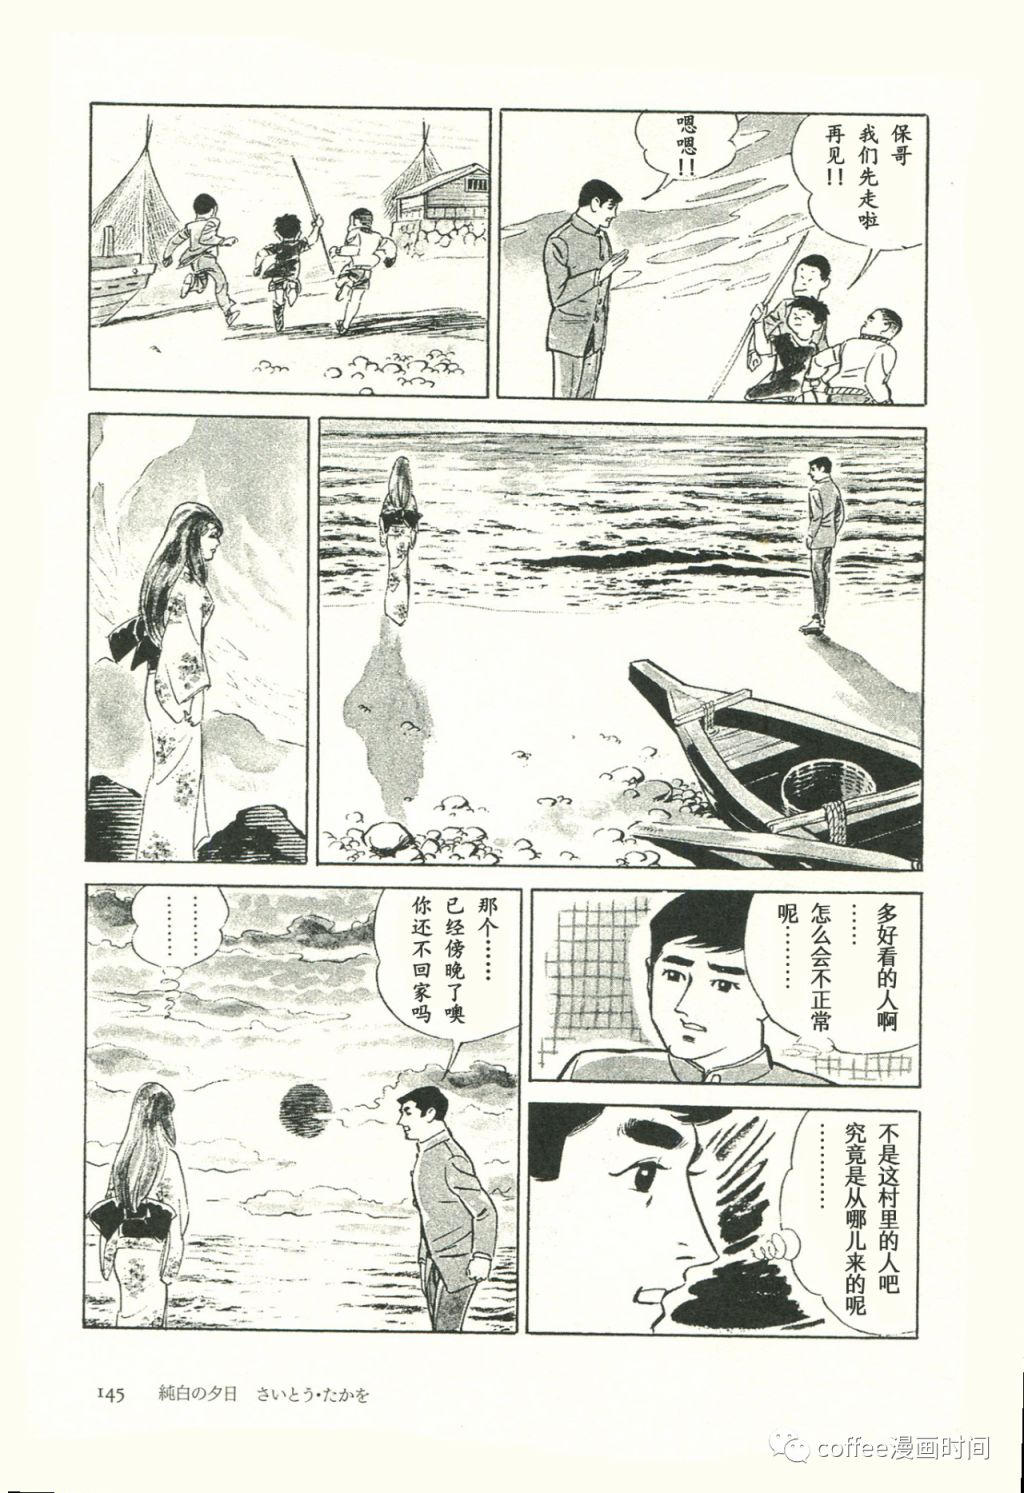 日本短篇漫畫傑作集 - 齋藤隆夫《純白的夕陽》 - 6